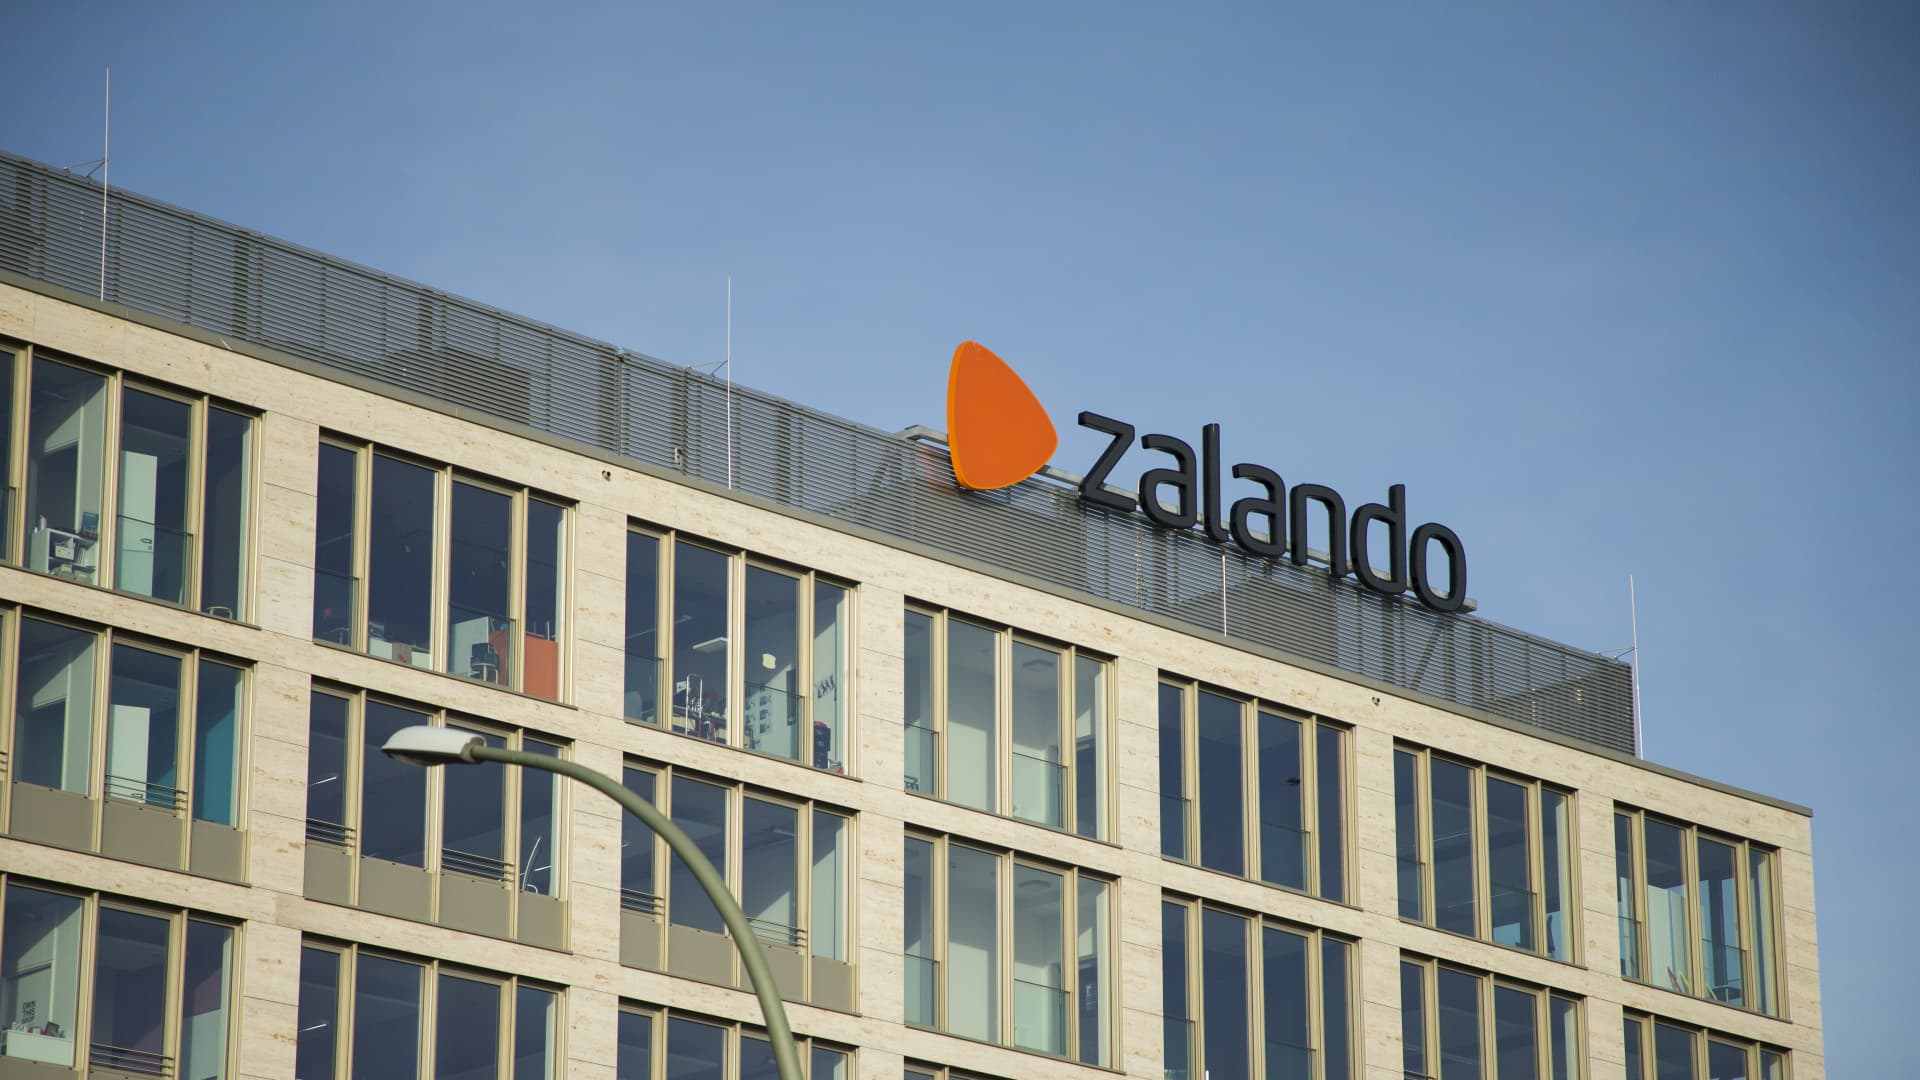 The Zalando logo is seen on a building in the district of Friedrichshain-Kreuzberg in Berlin, Germany